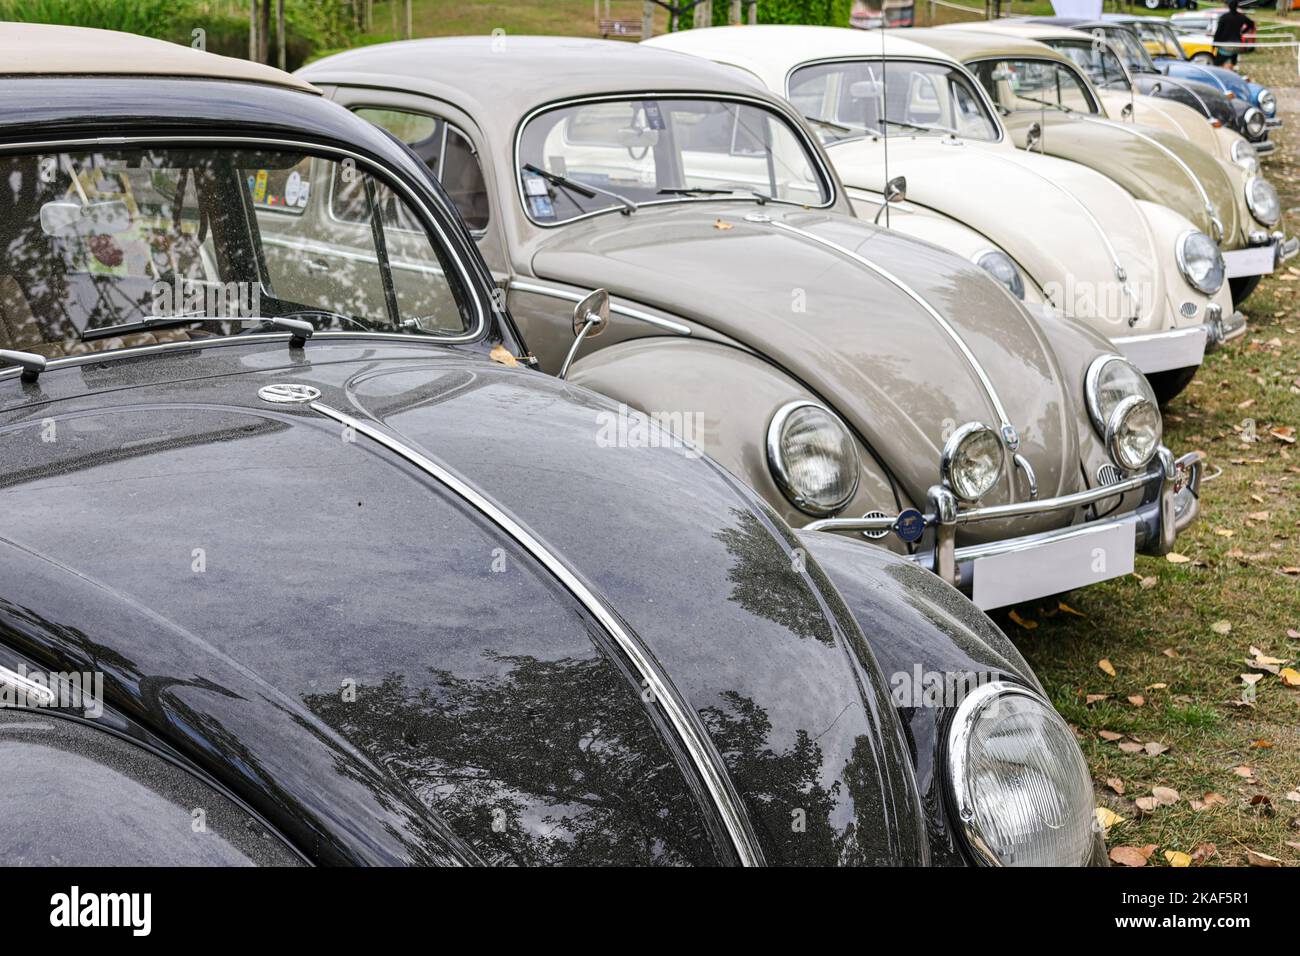 Une rangée de différents modèles de voitures VW Beetle (Kafer) lors d'une exposition dans un parc Banque D'Images